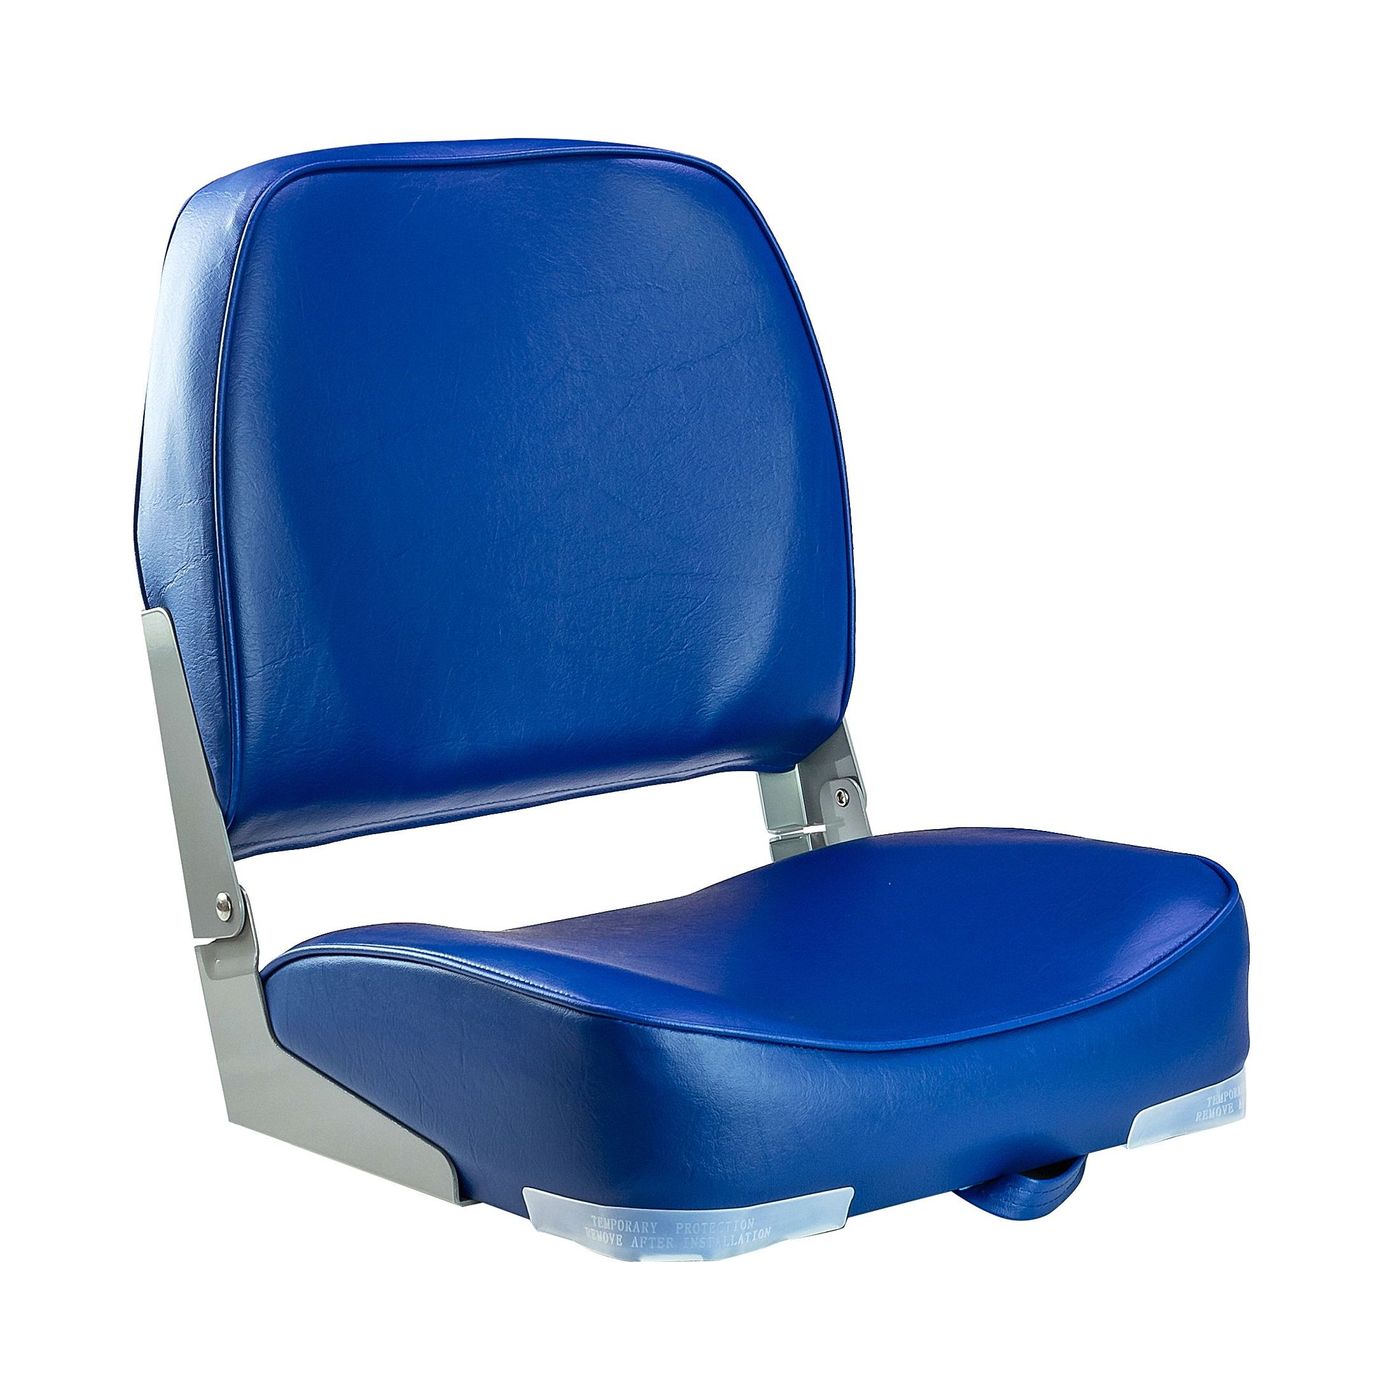 Кресло мягкое складное, обивка винил, цвет синий, Marine Rocket 75103B-MR сиденье мягкое pro casting обивка синий винил 75104b